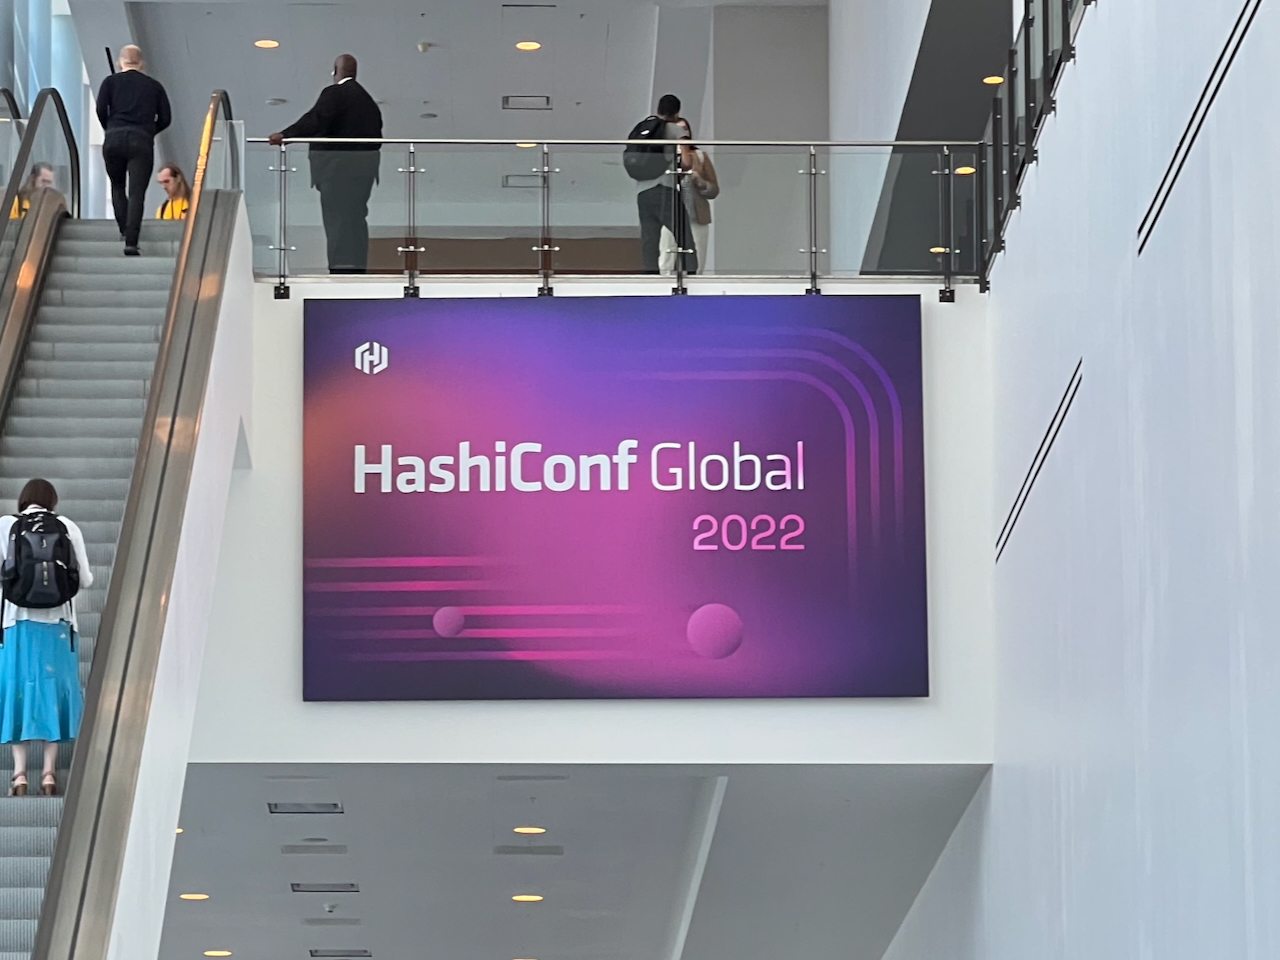 「HashiConf Global 2022」--写真で見るHashiCorpコミュニティーカンファレンス